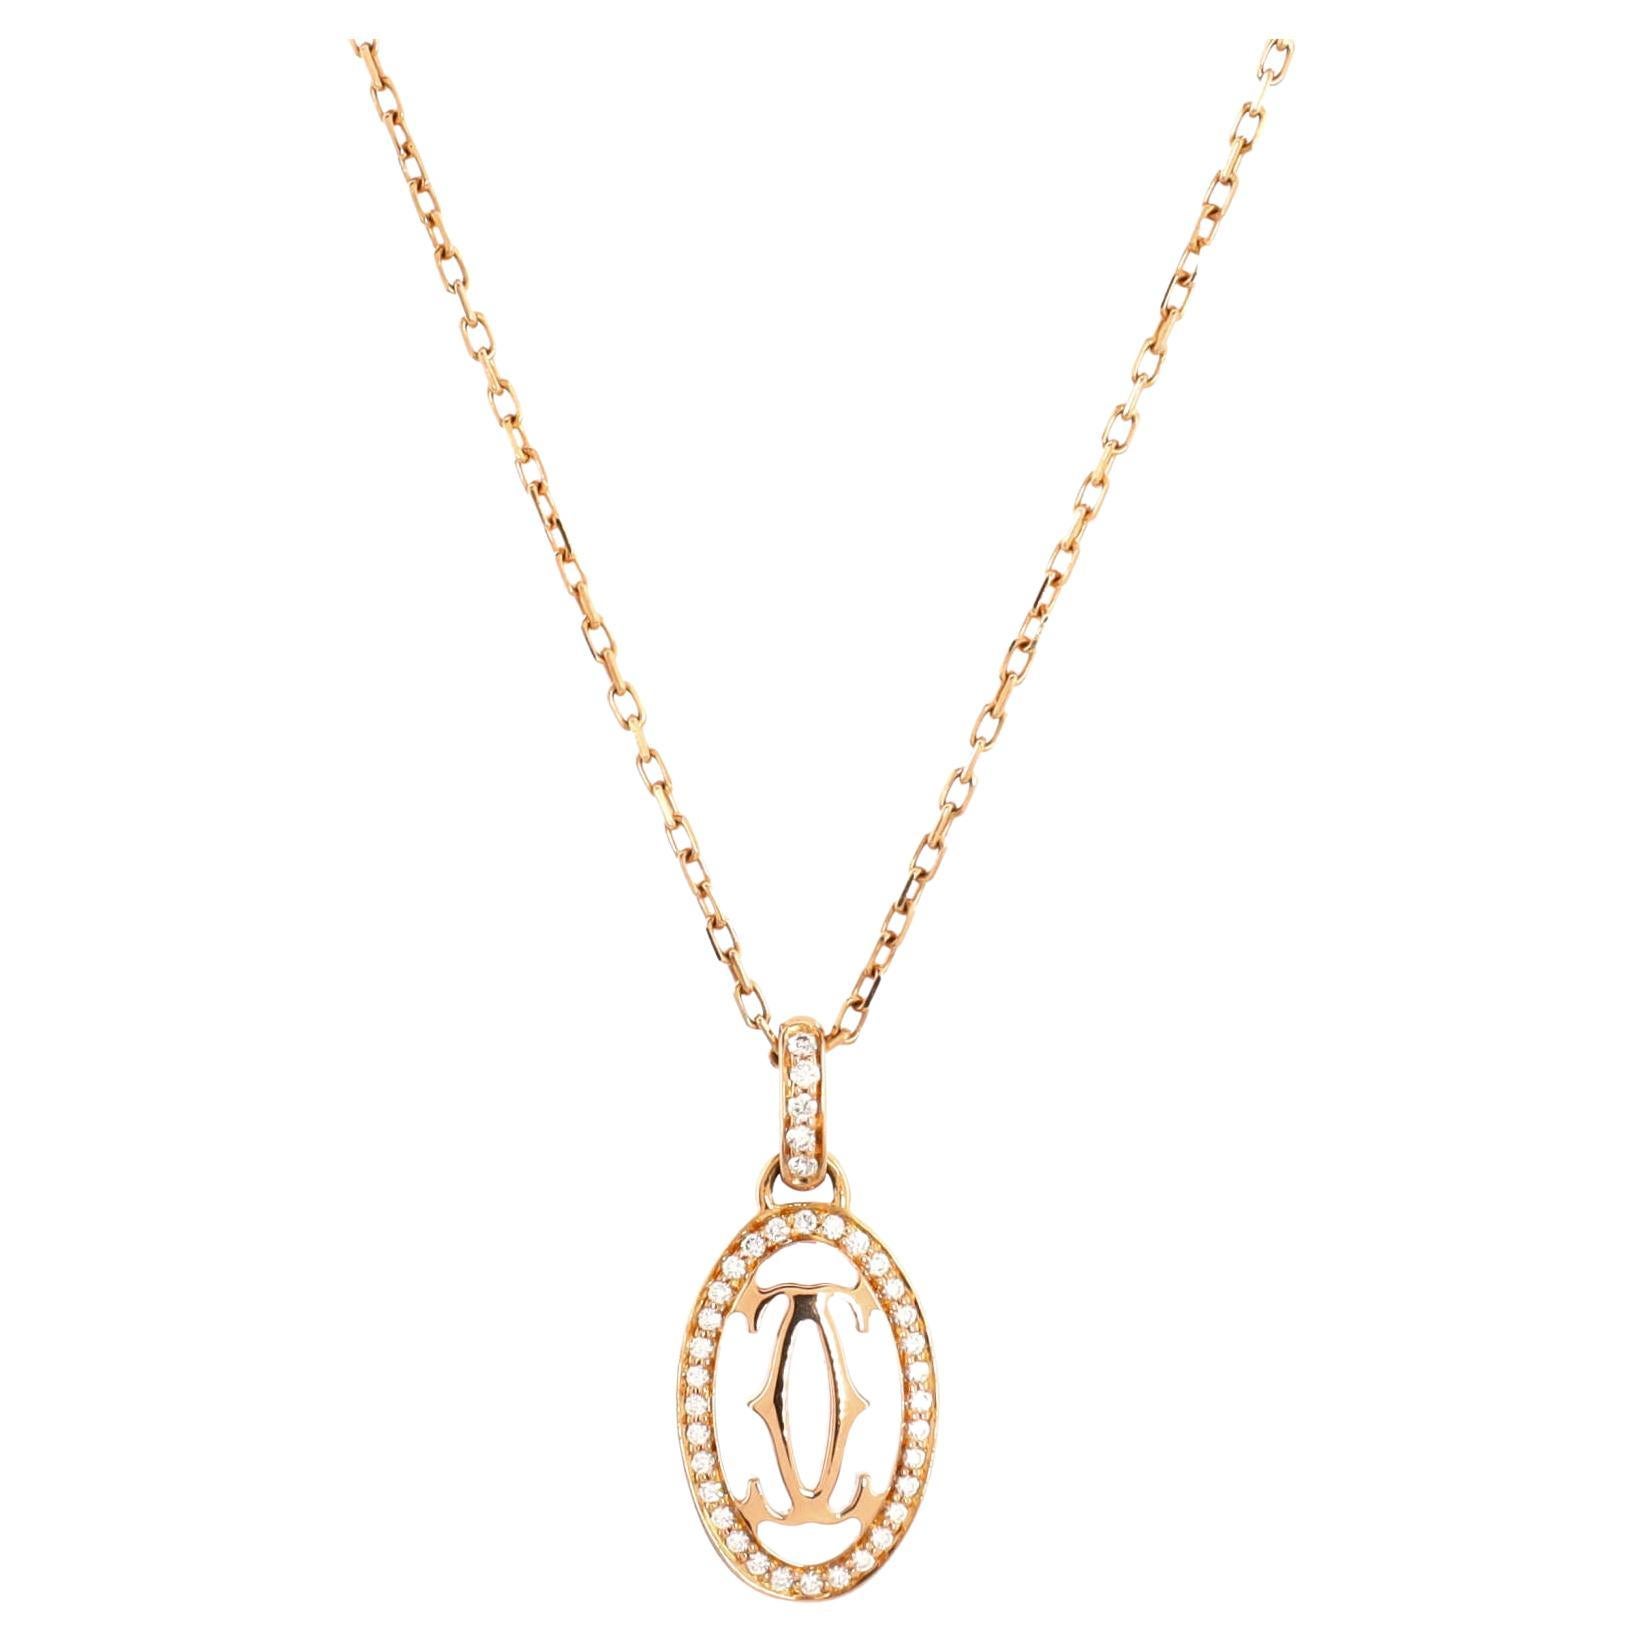 Cartier Double C De Cartier Pendant Necklace 18k Rose Gold and